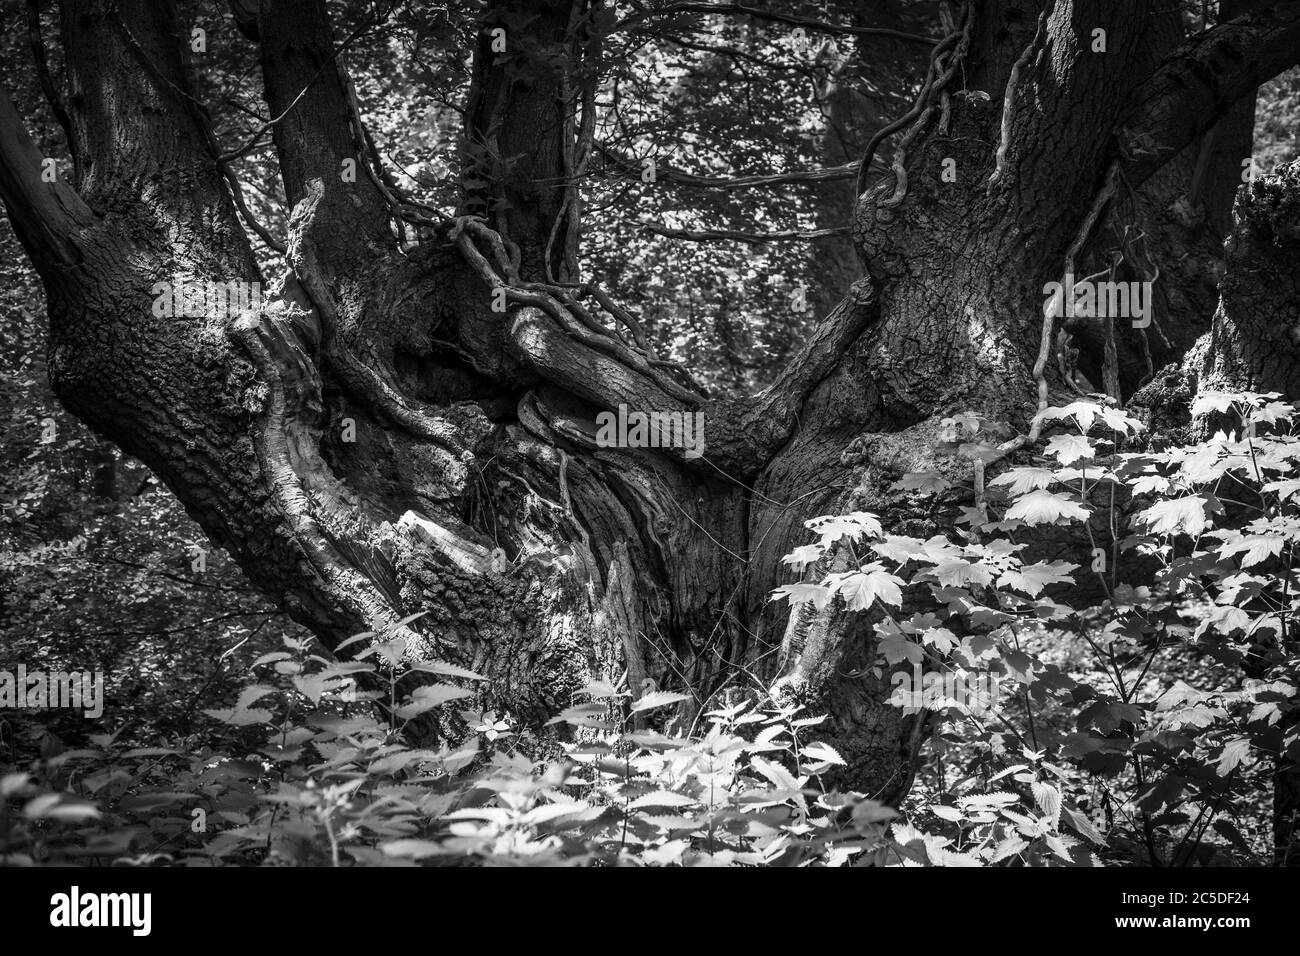 Monochromes Bild der Basis von knorrigen Baum mit weichem Fokus Wald im Hintergrund Stockfoto